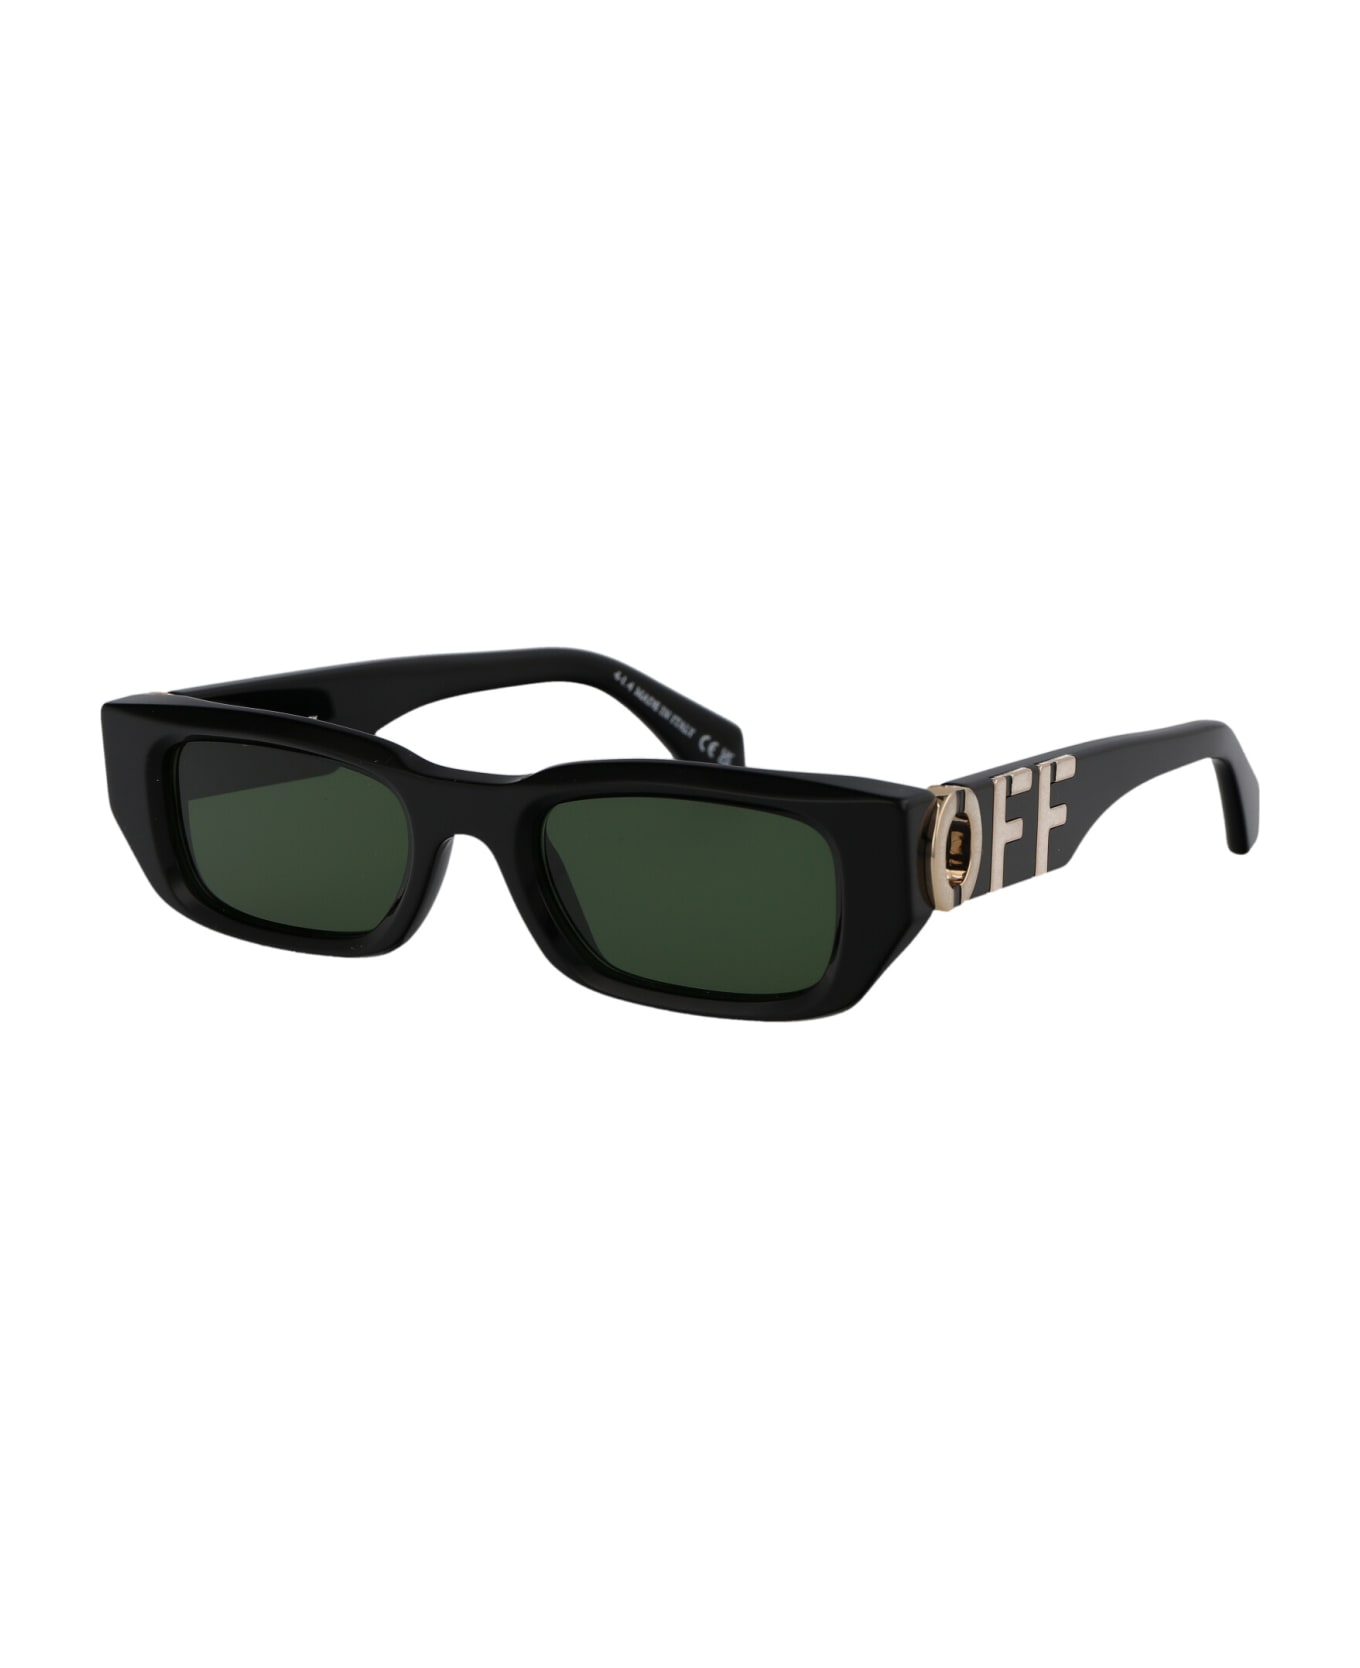 Off-White Fillmore Sunglasses - 1055 BLACK GREEN